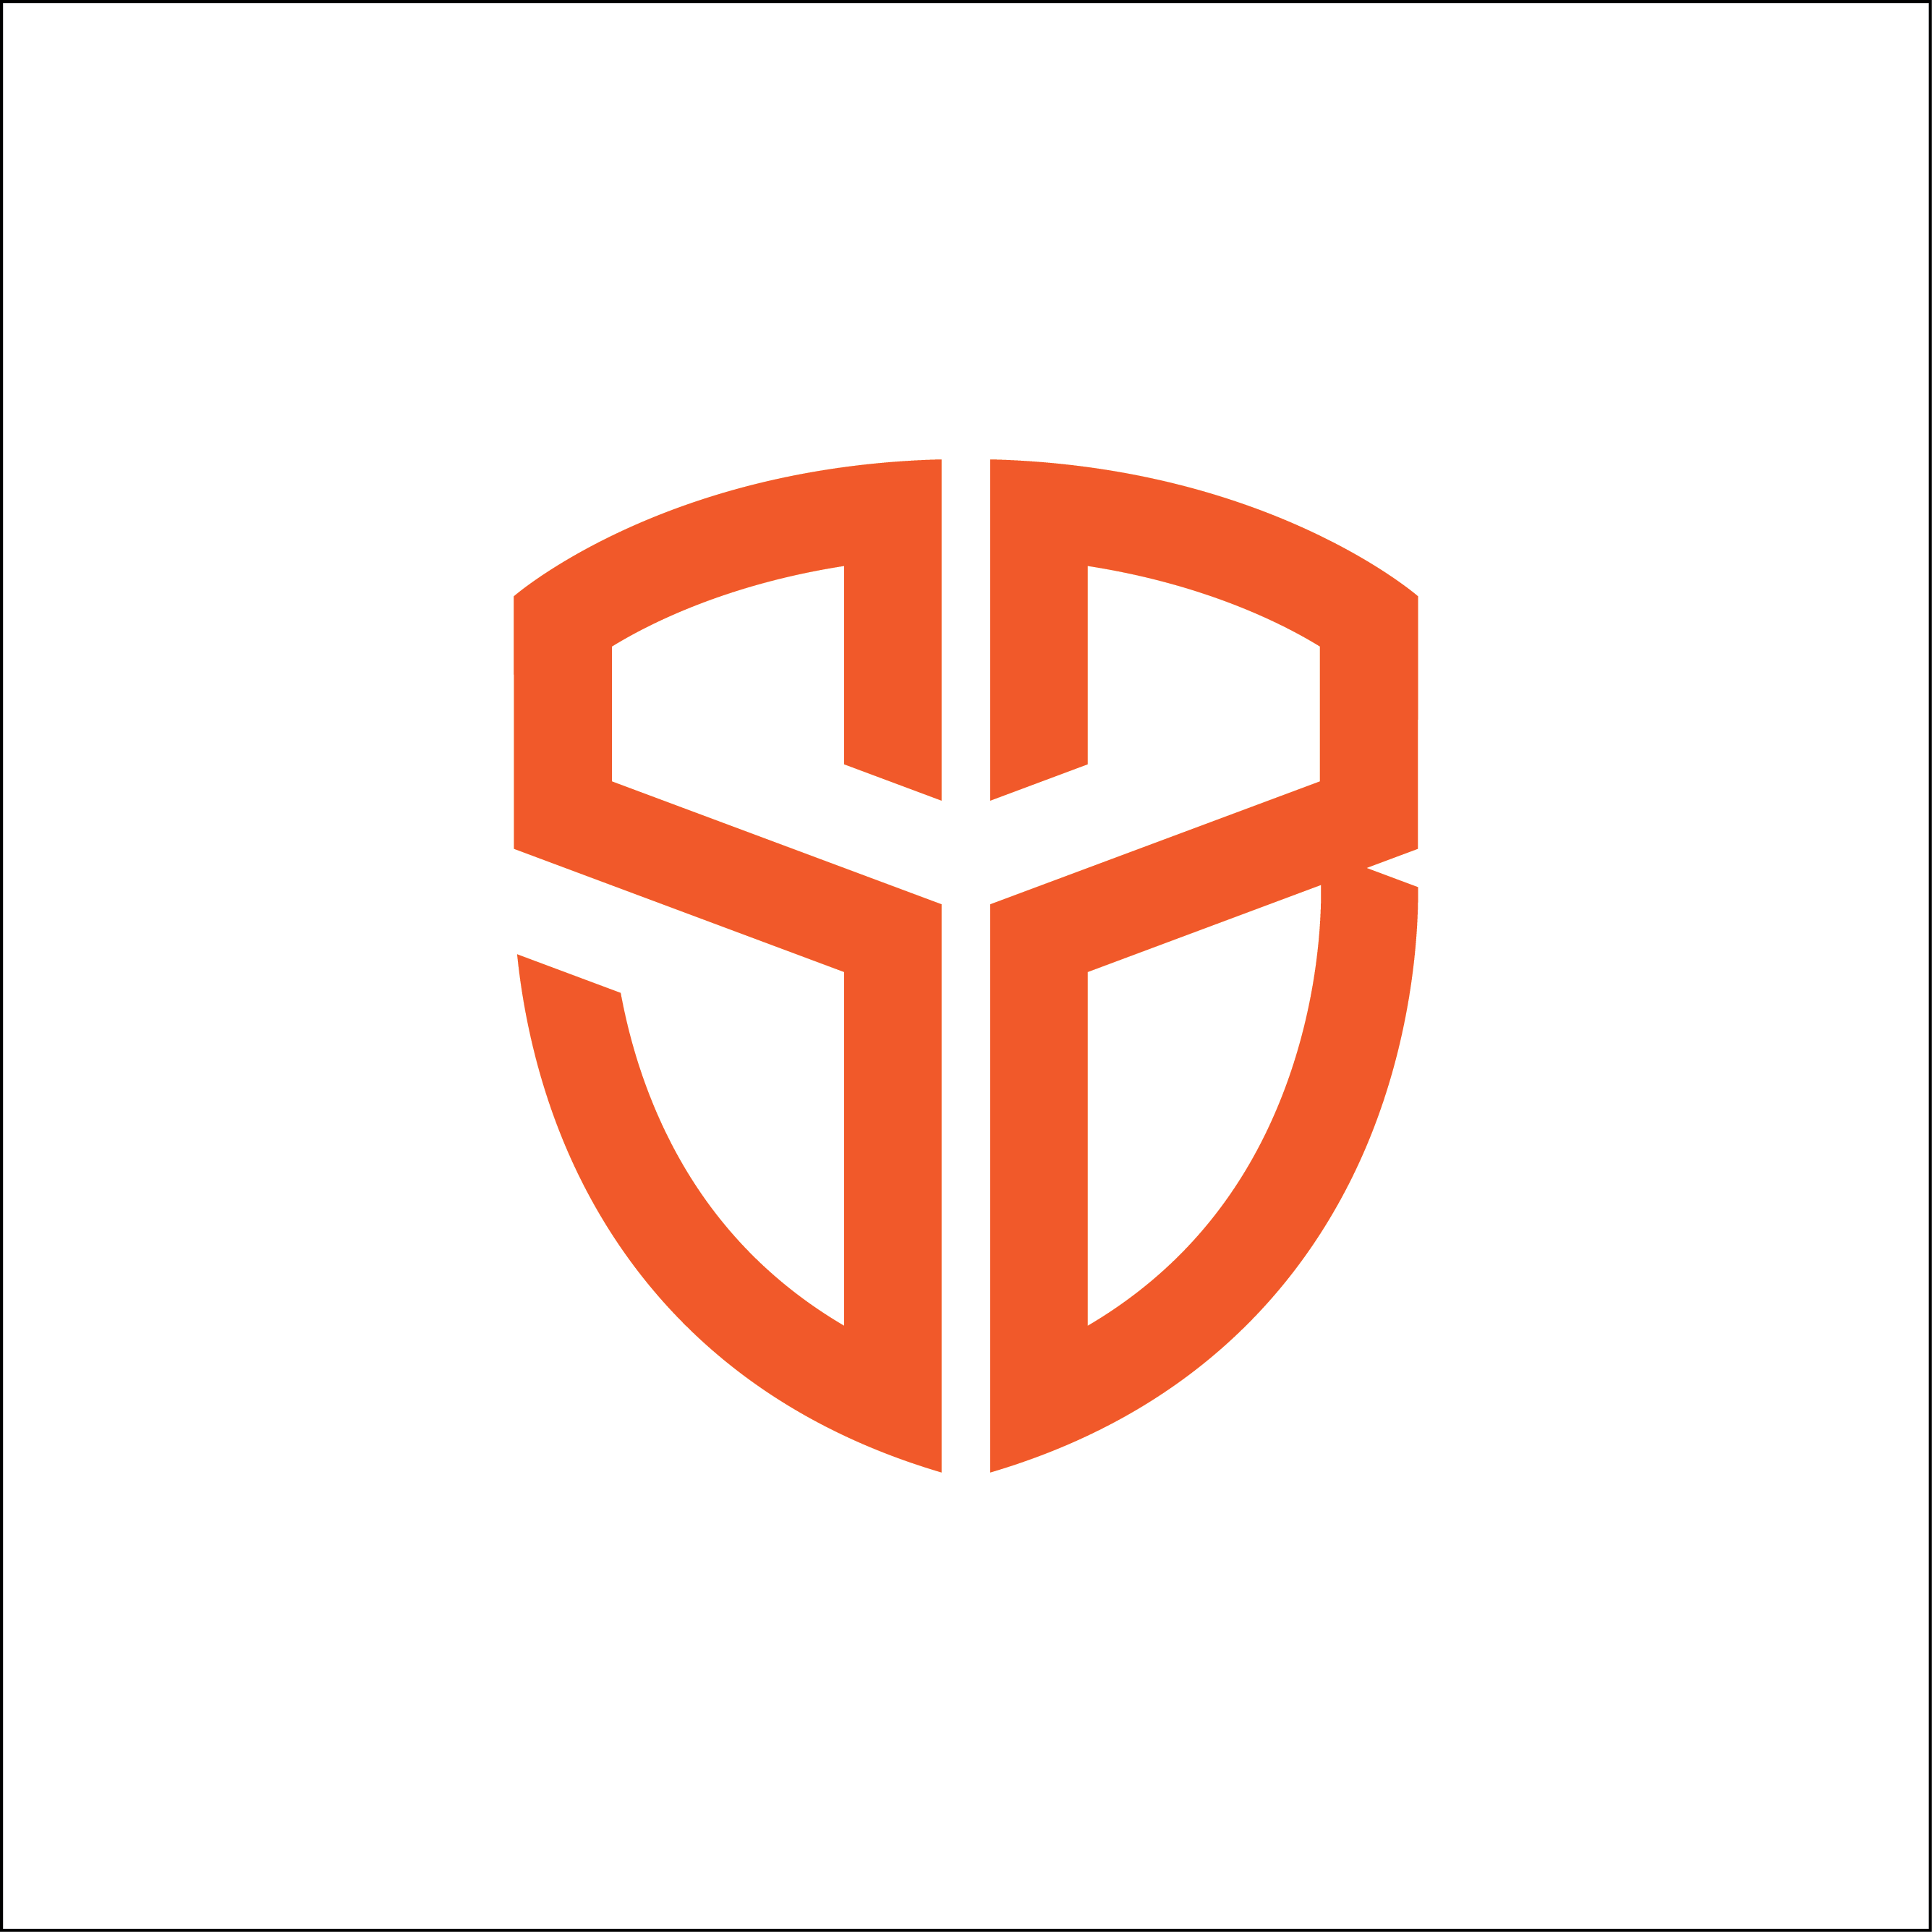 SB Logo - Sb logo png 3 » PNG Image